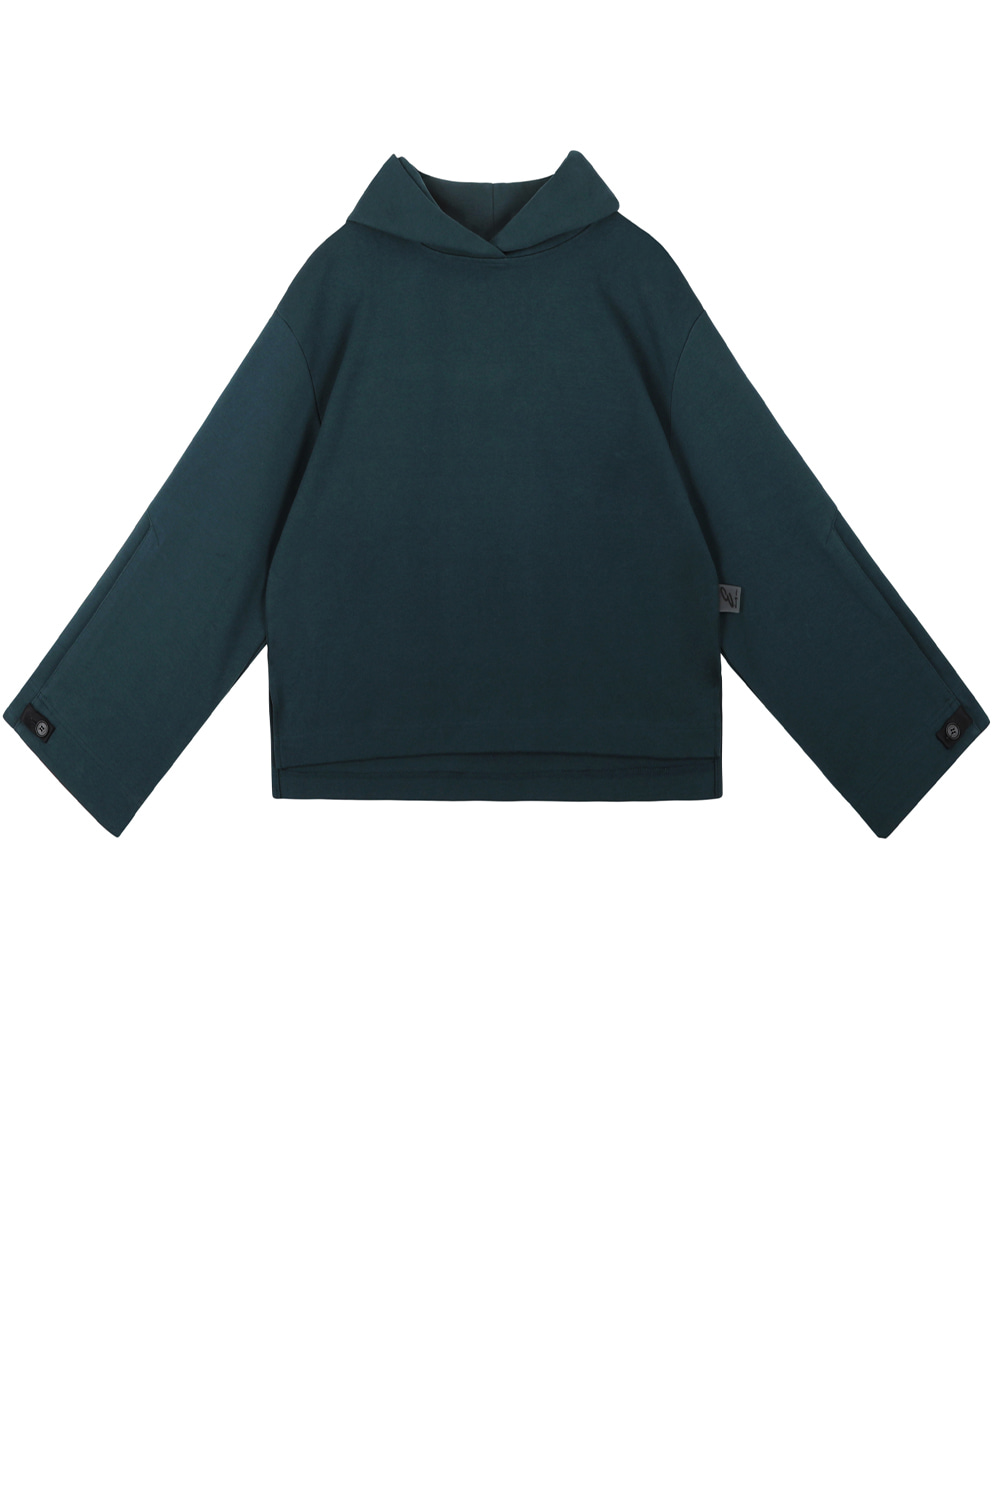 Cuffs button hoodie sweatshirt_Green